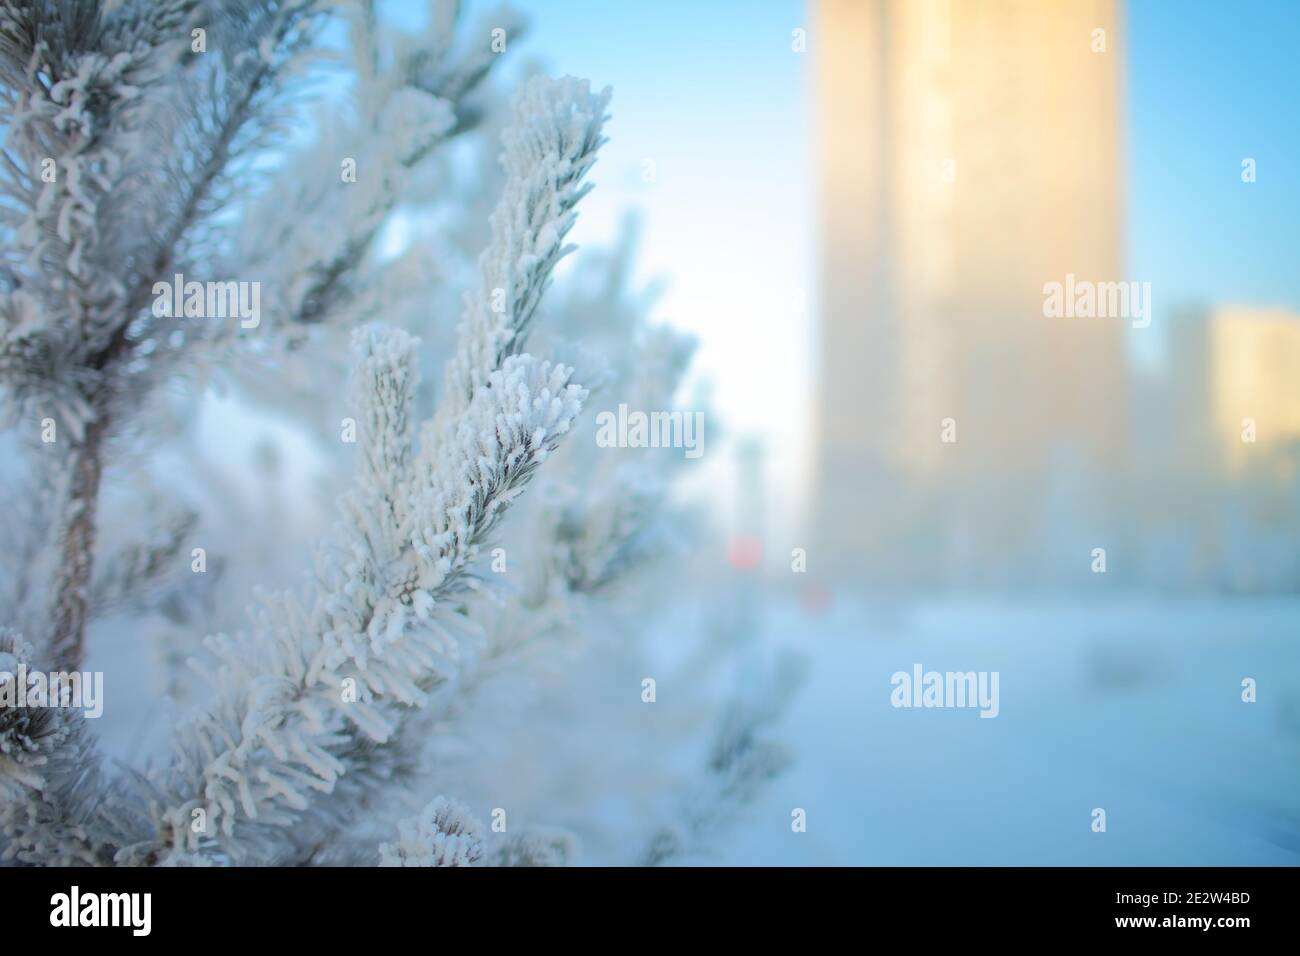 Paisaje urbano invernal con árbol congelado. Foto de stock